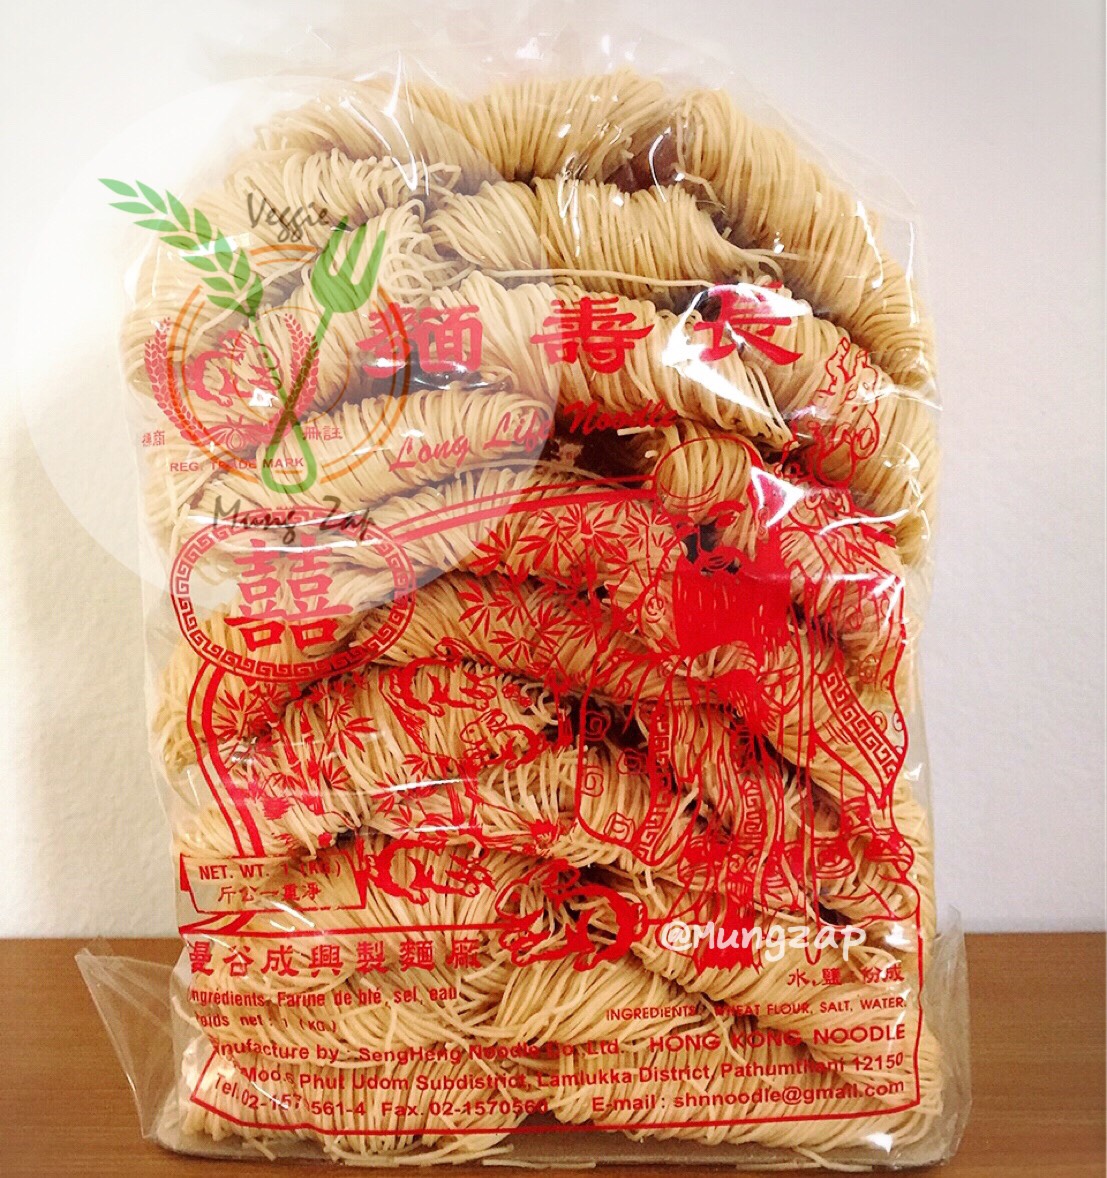 หมี่ฮ่องกง หมี่ซั่ว (เจ) - 1,000 กรัม Hong Kong Noodle อาหารเจ วัตถุดิบเจ